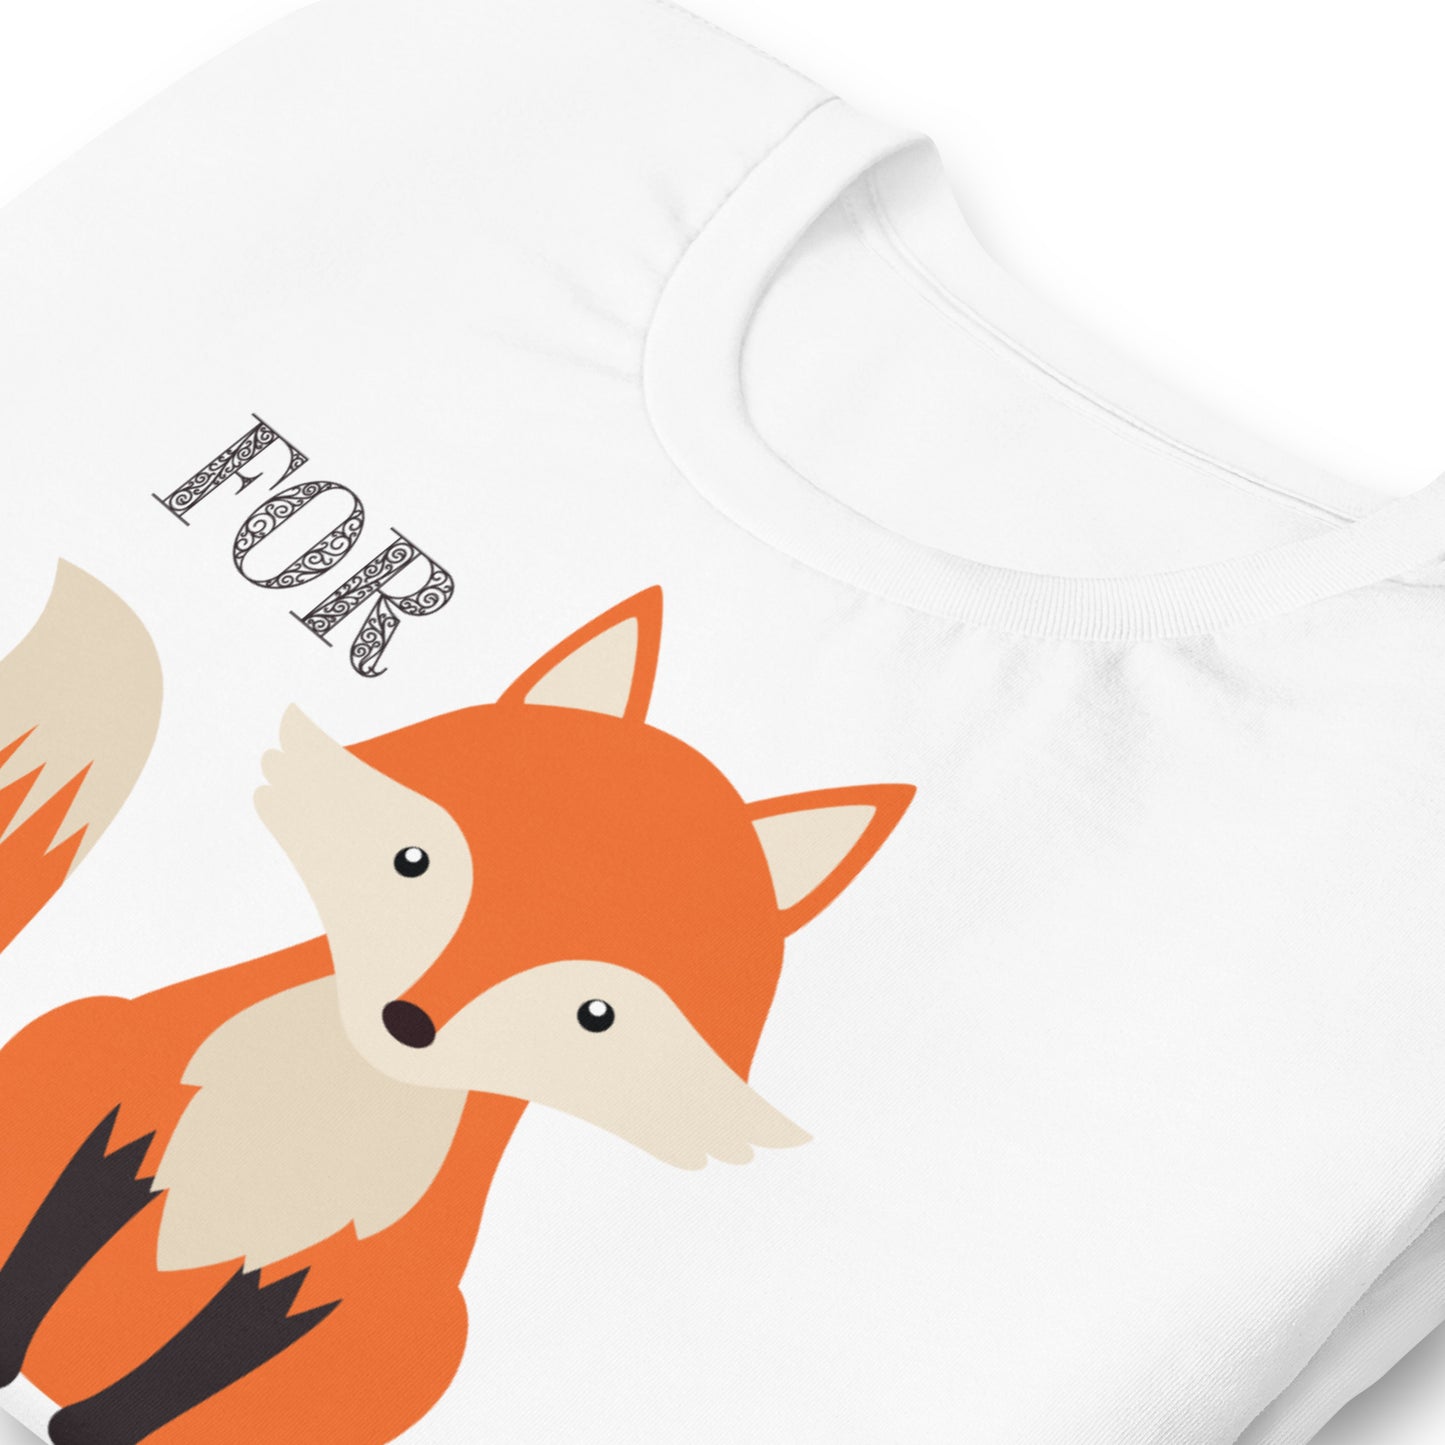 For Fox Sake Unisex t-shirt